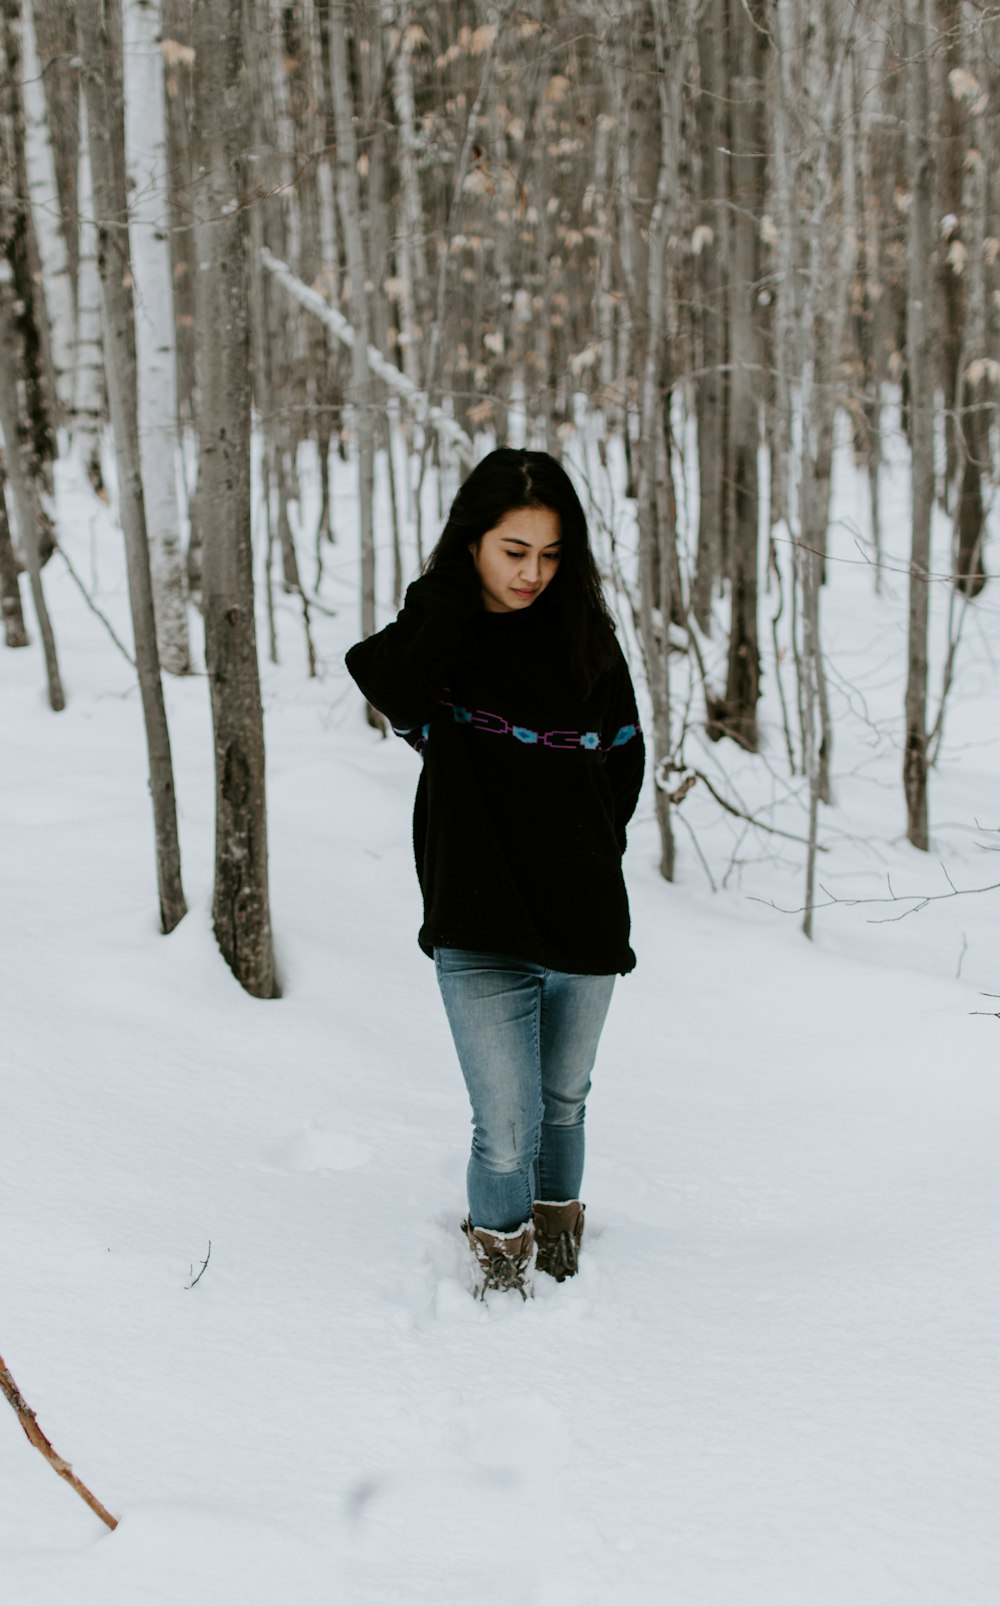 Frau im schwarzen Hemd steht auf Schnee